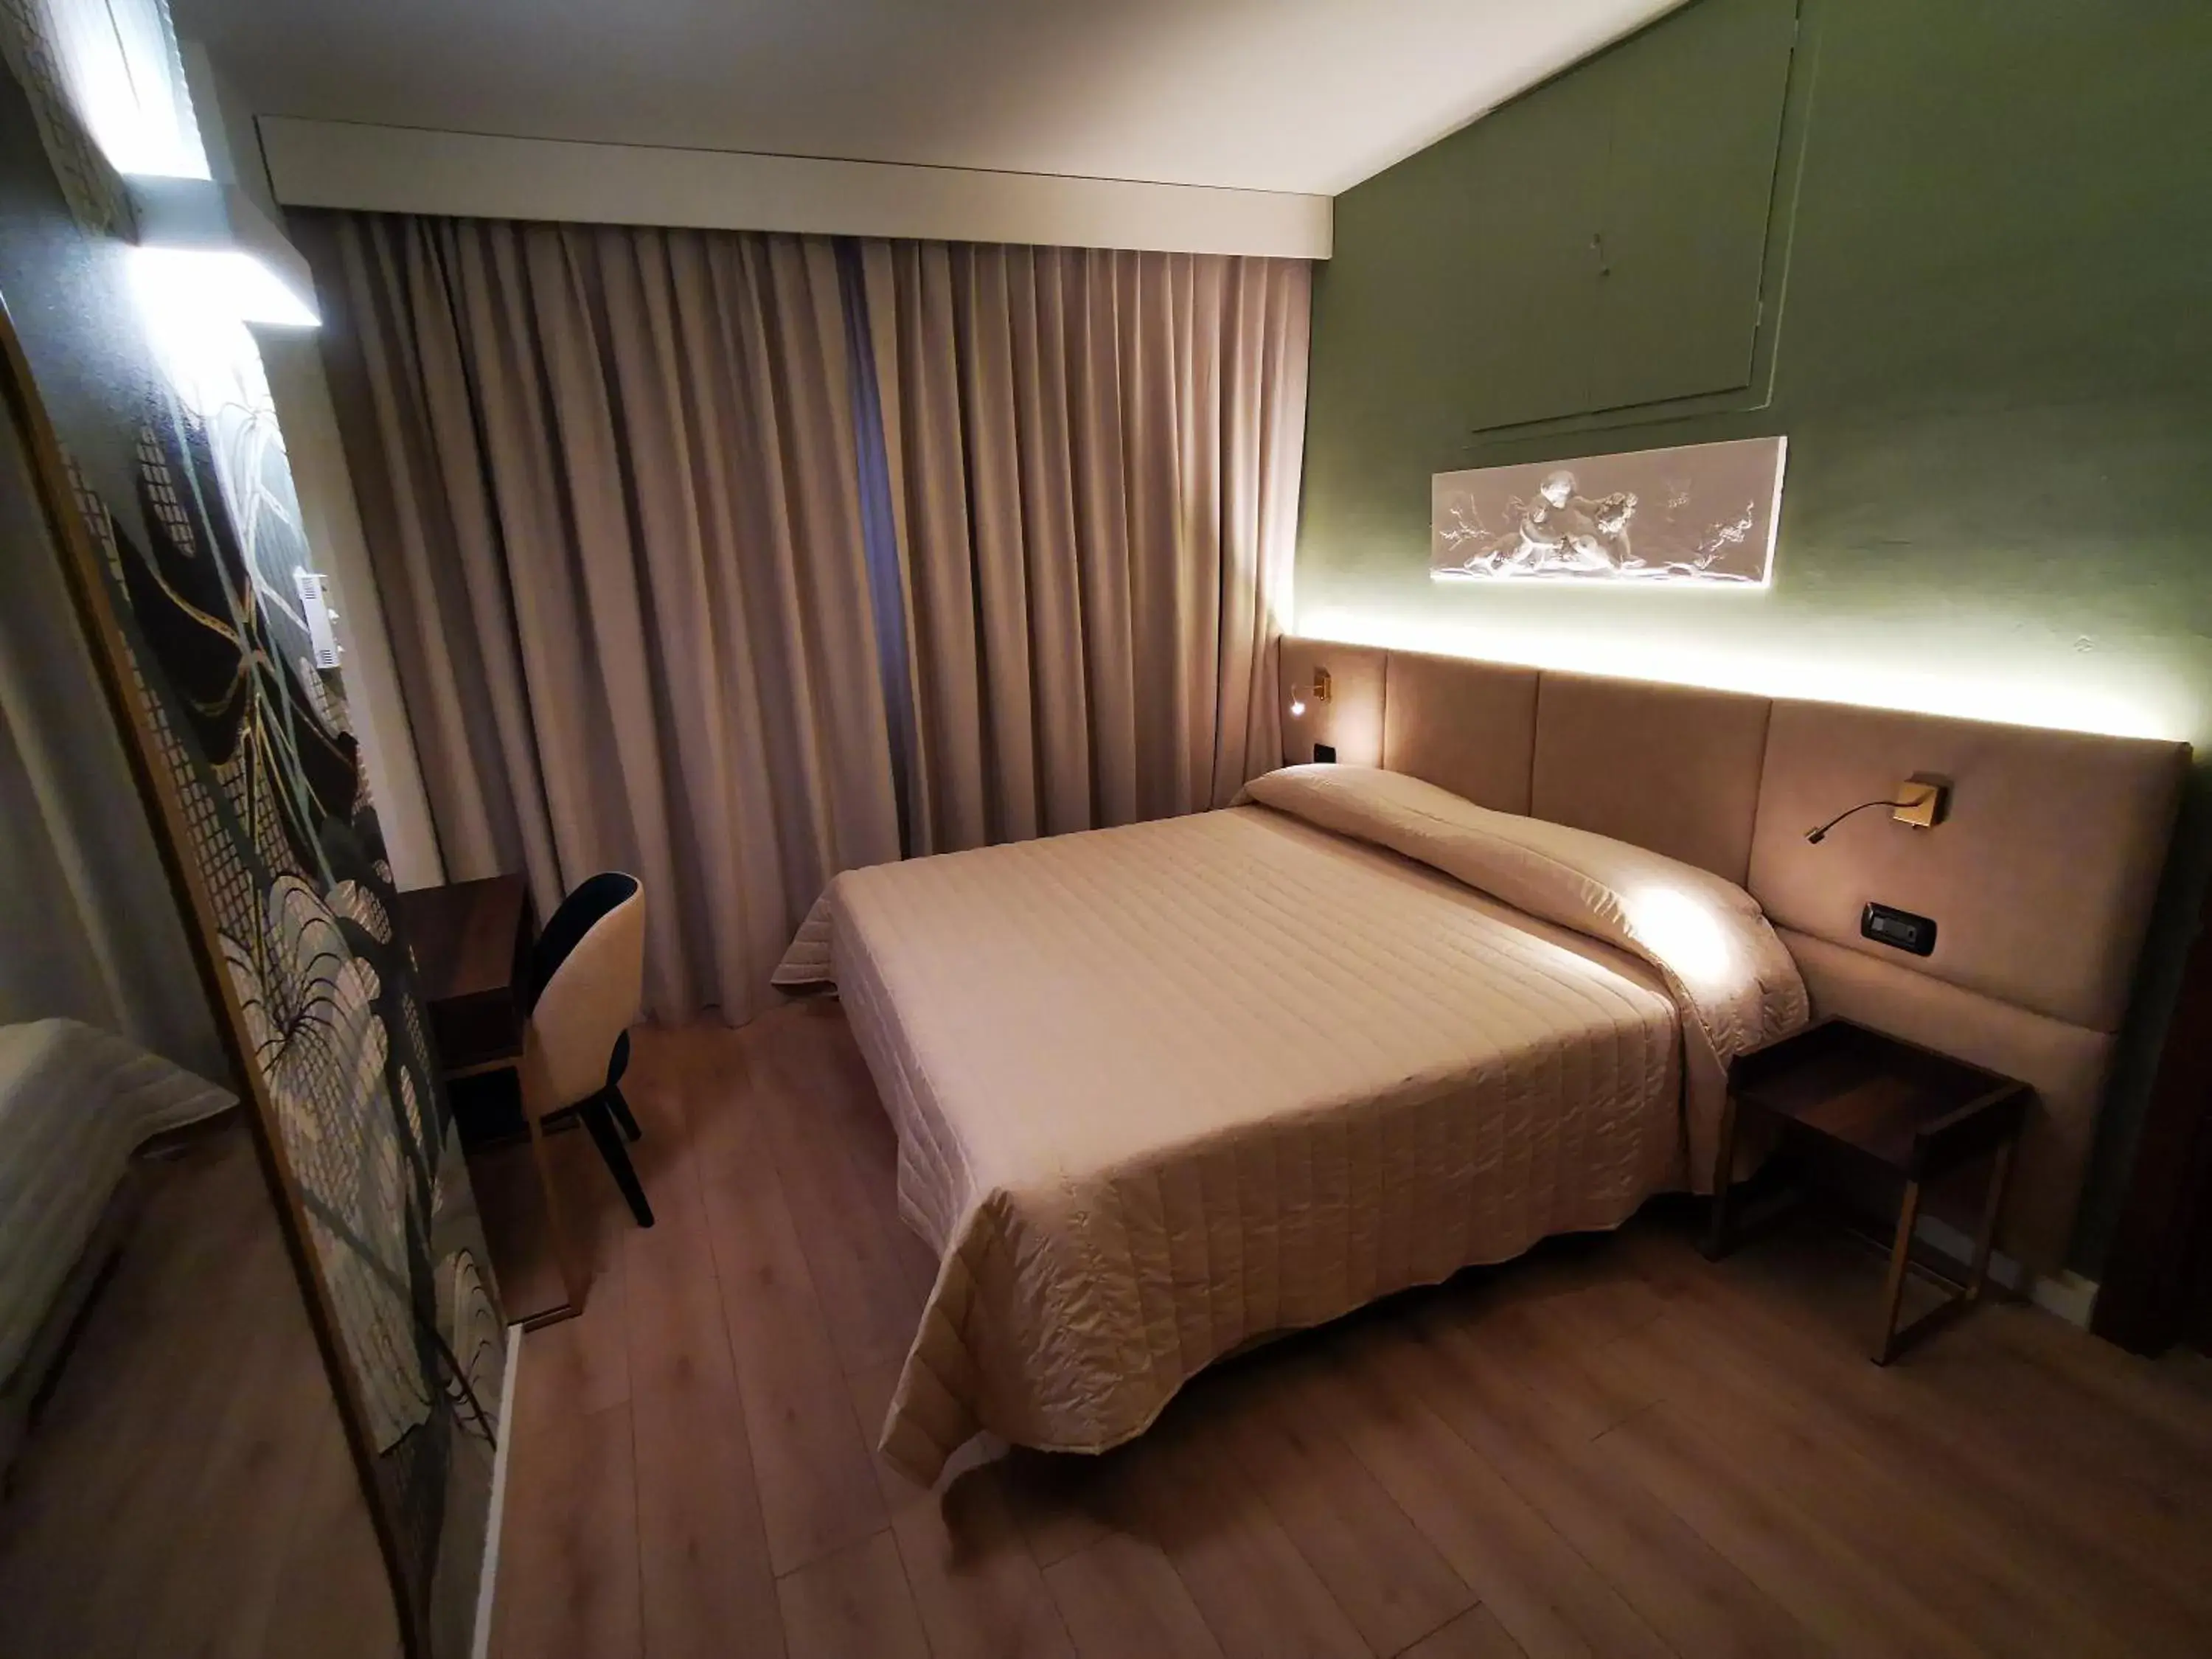 Bedroom, Bed in Hotel Balcony